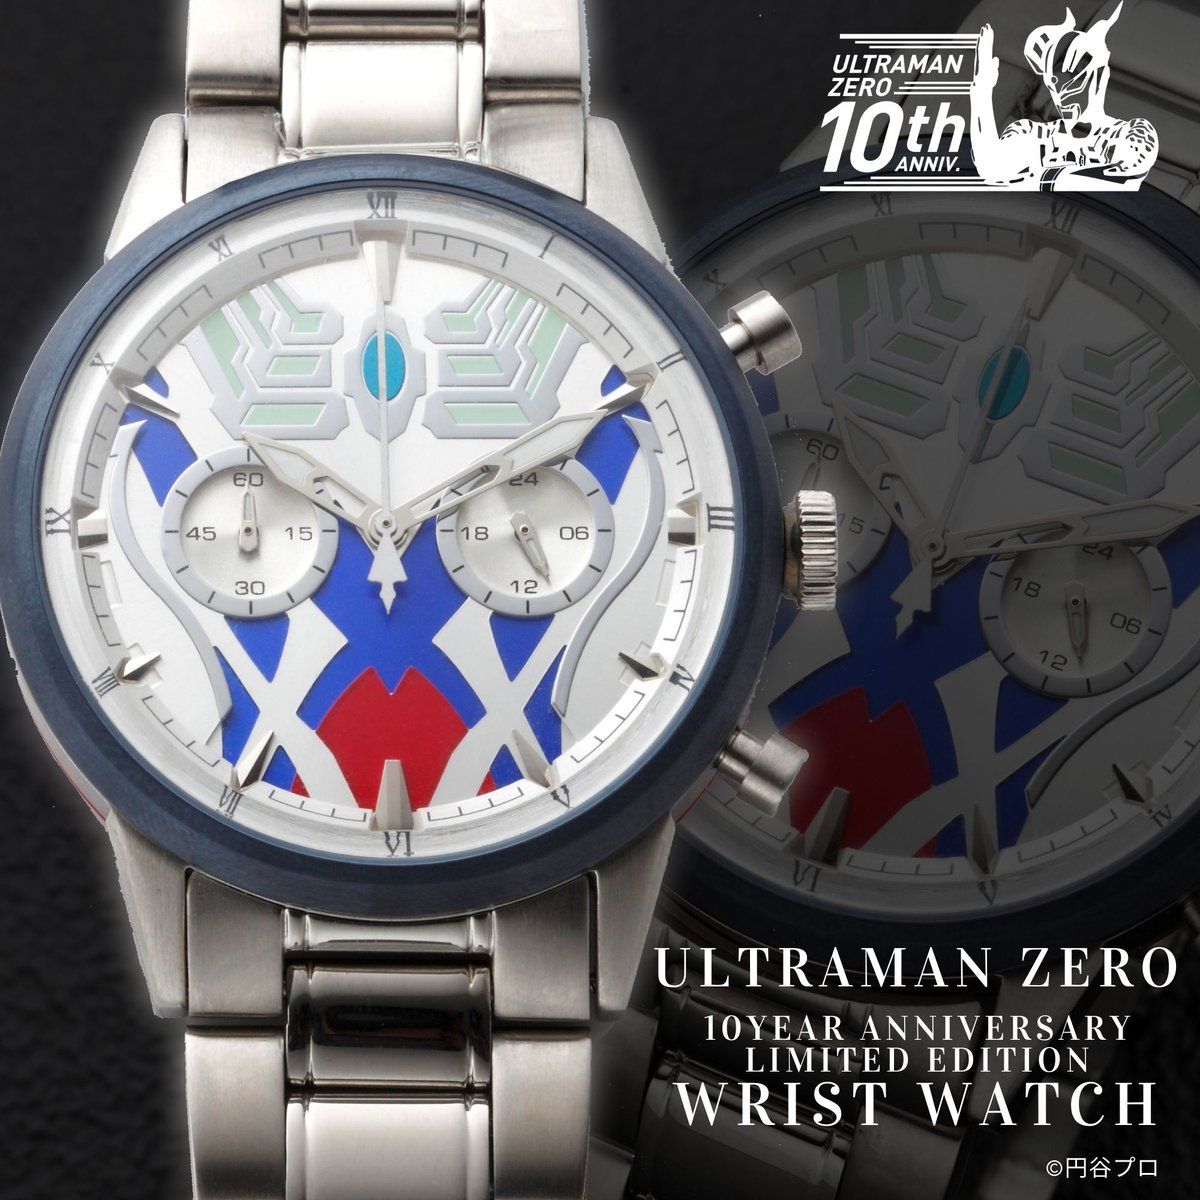 ウルトラマンゼロ 10周年anniversary 腕時計 ウルトラマンゼロ 趣味 コレクション バンダイナムコグループ公式通販サイト